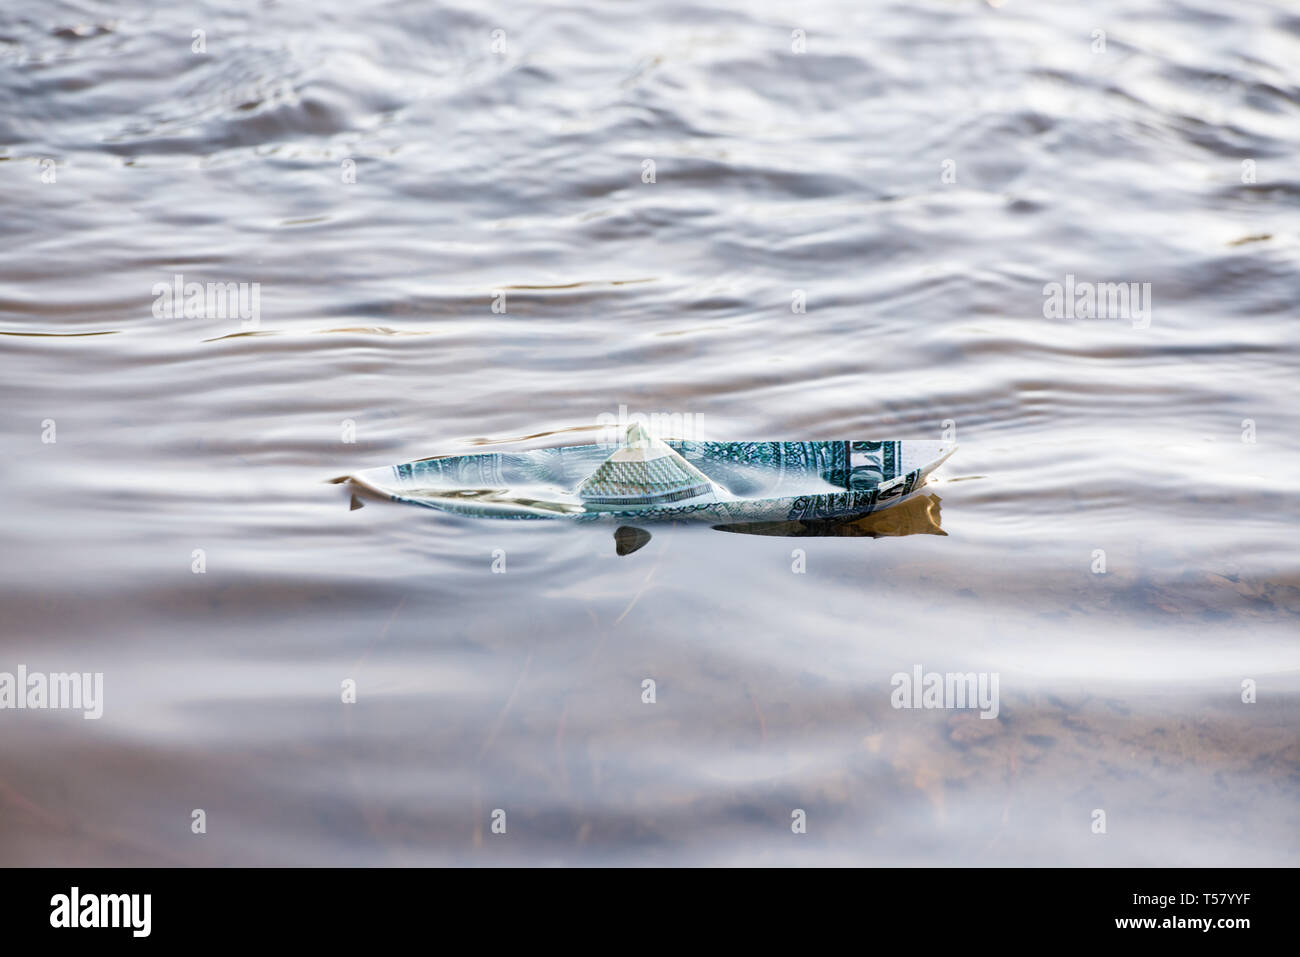 Una barca di carta da un dollaro è in pericolo. Il dollaro è che affonda nell'acqua. Immagine simbolica. Foto Stock